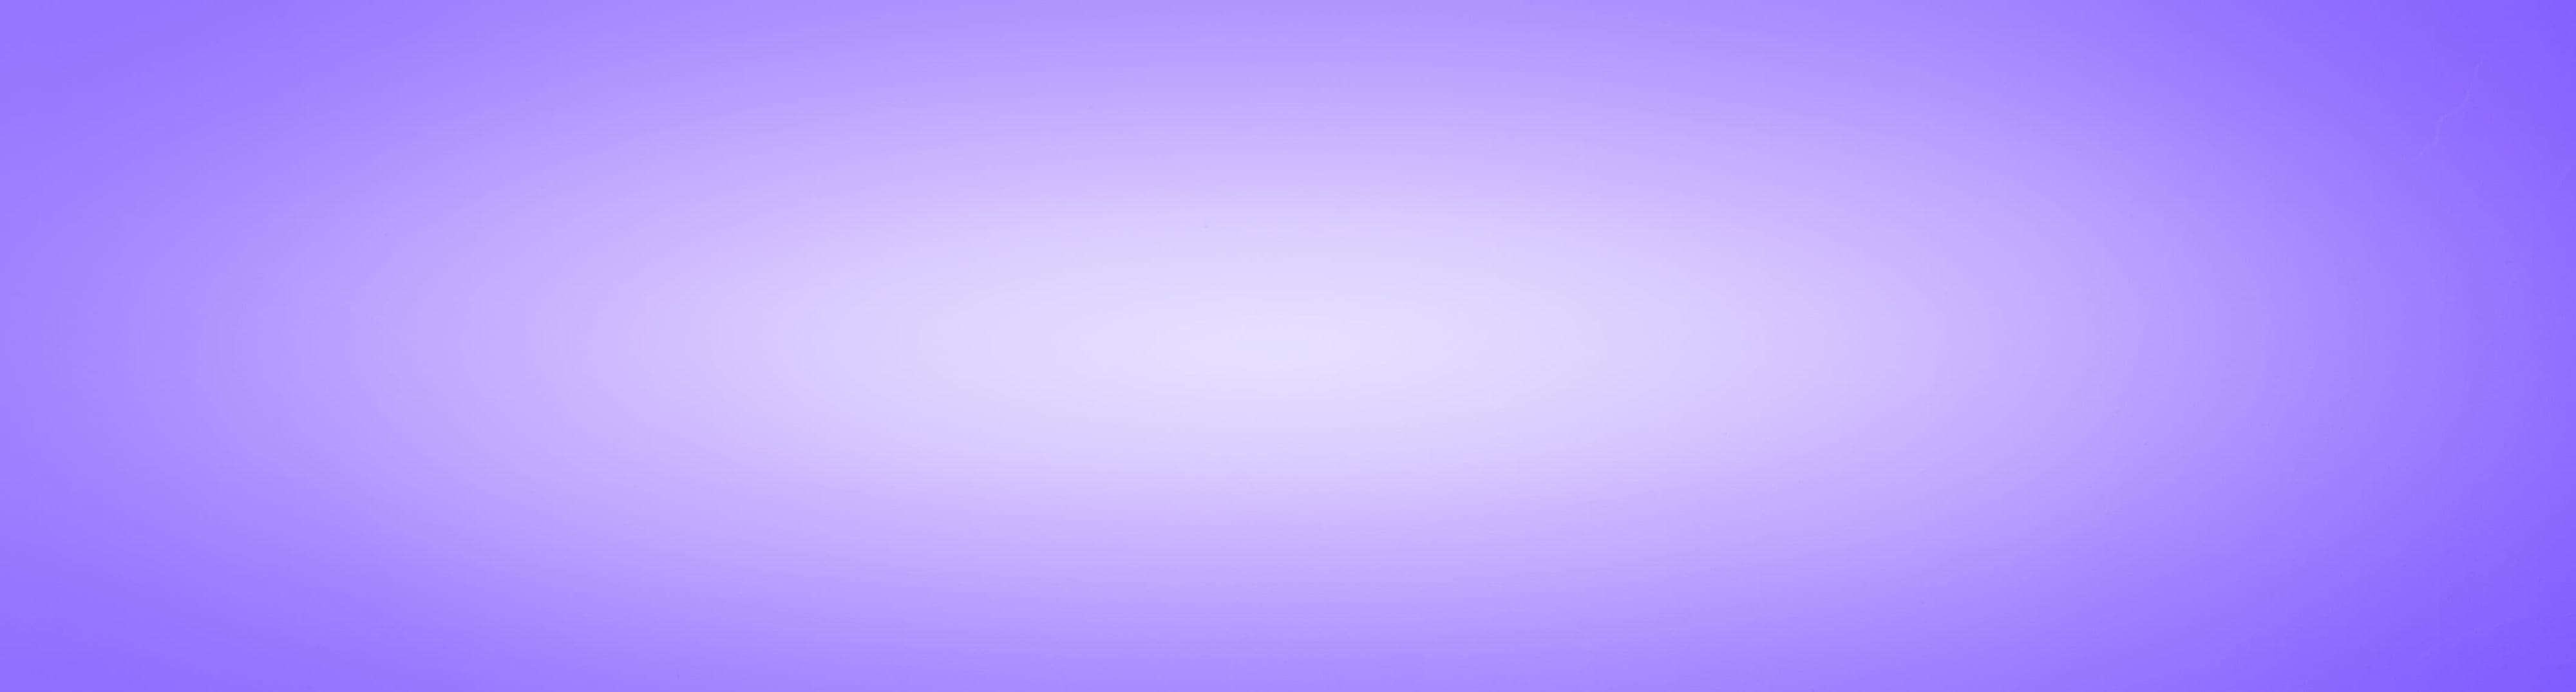 Galerie der Lichtbewusstseinakademie Süd - Radialer Farbverlauf violett